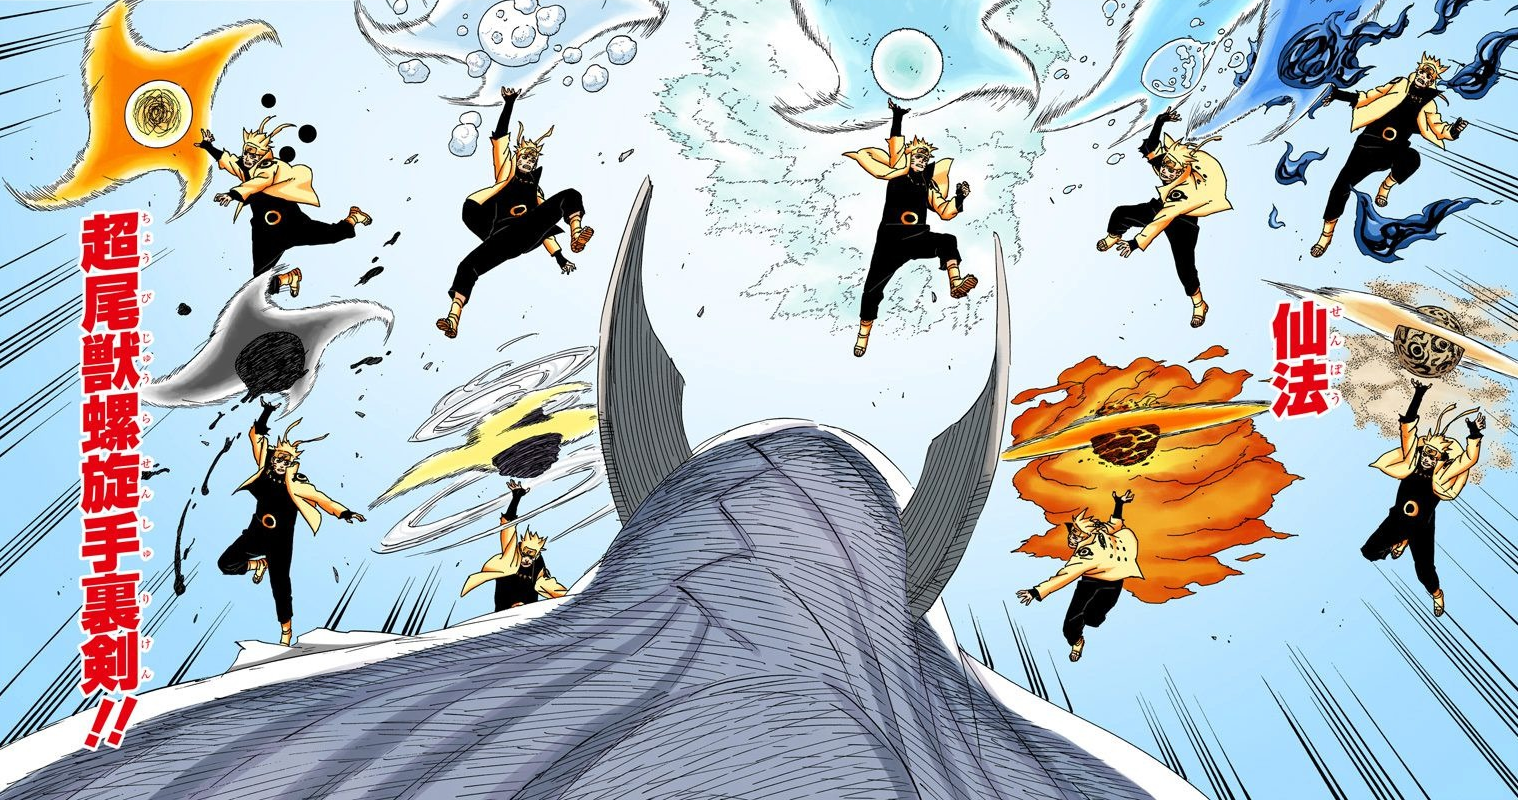 Rasengan là một trong những kỹ thuật đặc trưng của Naruto, được sử dụng để đánh bại những kẻ thù mạnh mẽ. Hãy cùng xem hình ảnh vẽ Rasengan để cảm nhận được sức mạnh và đẳng cấp của kỹ thuật này.